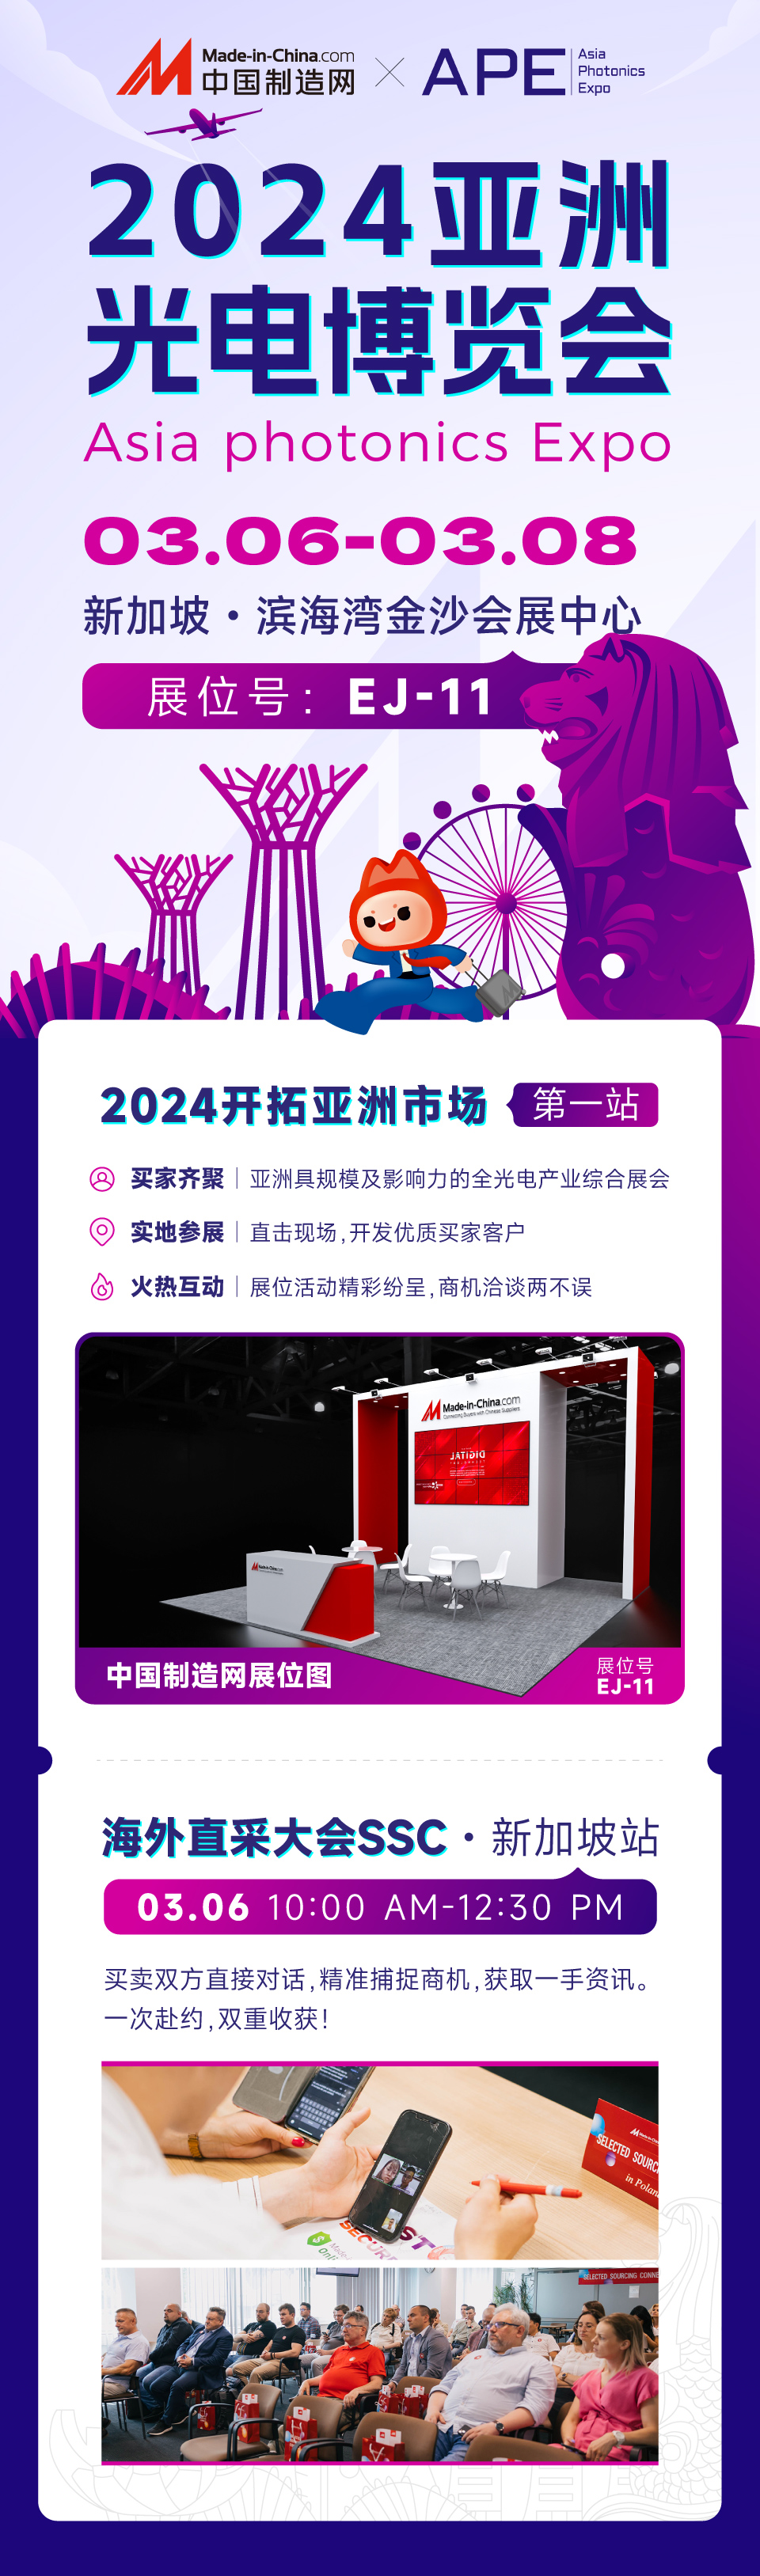 2024开拓亚洲市场第一站——新加坡